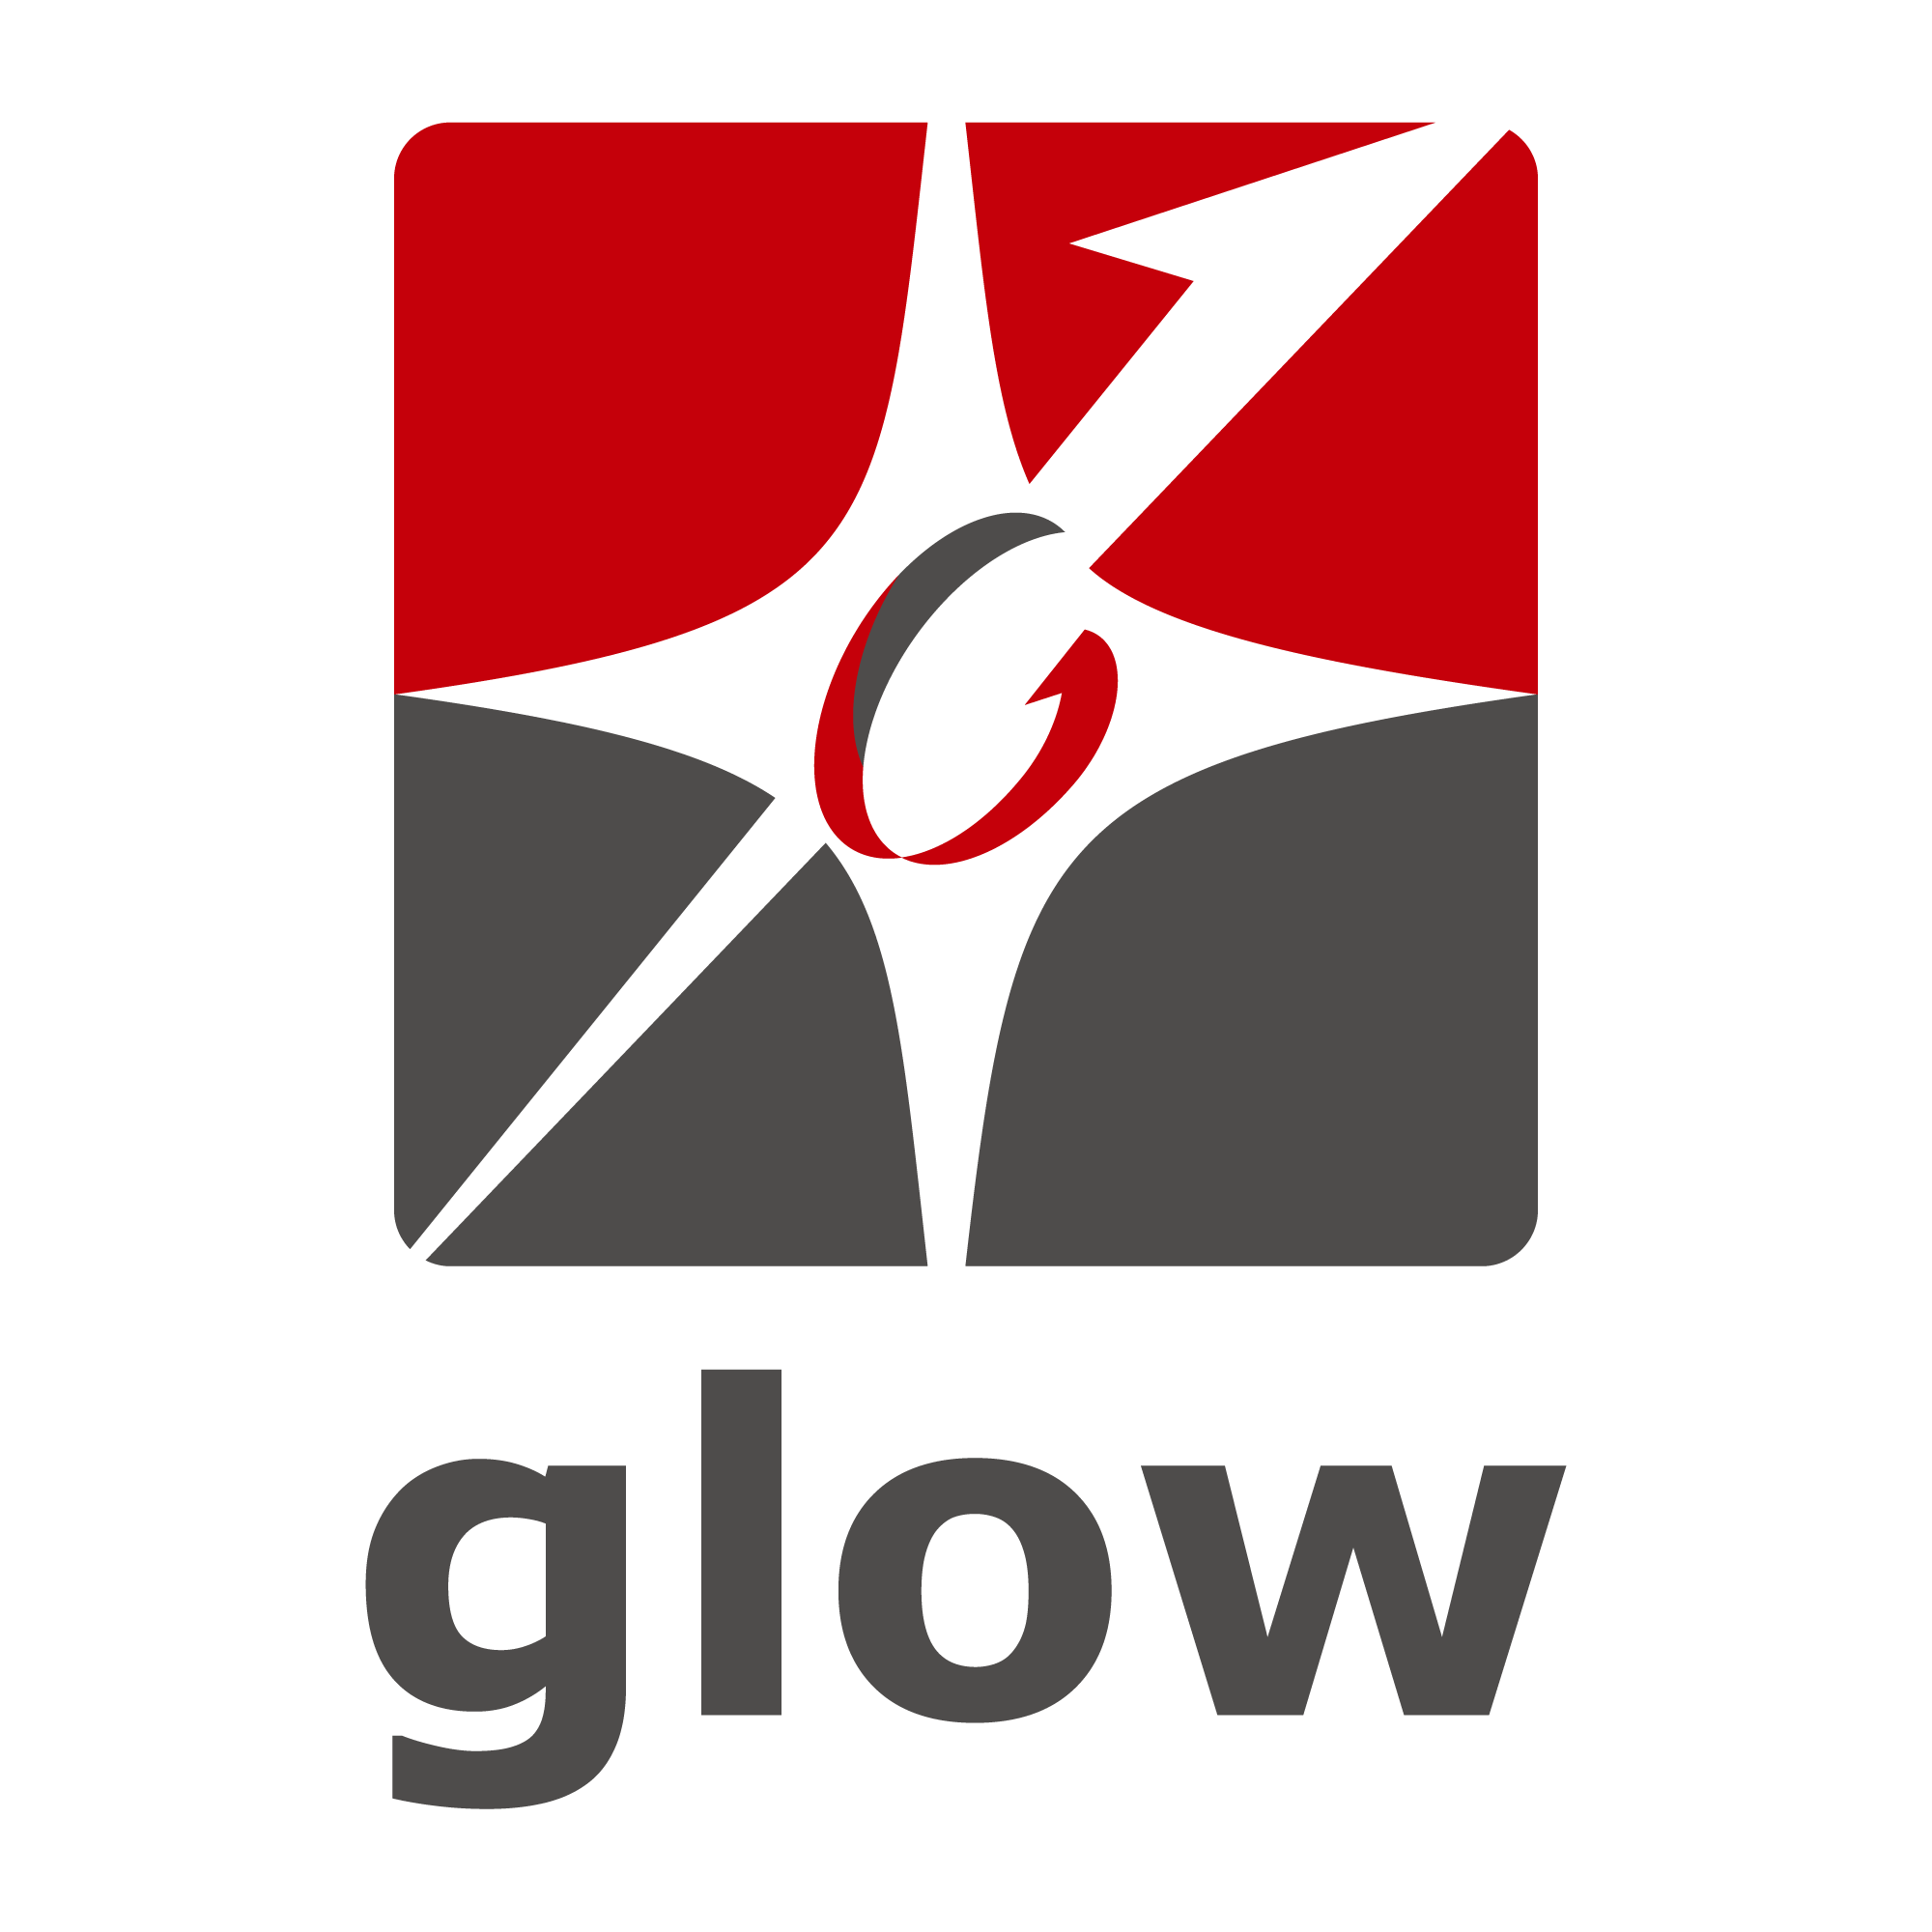 株式会社glow